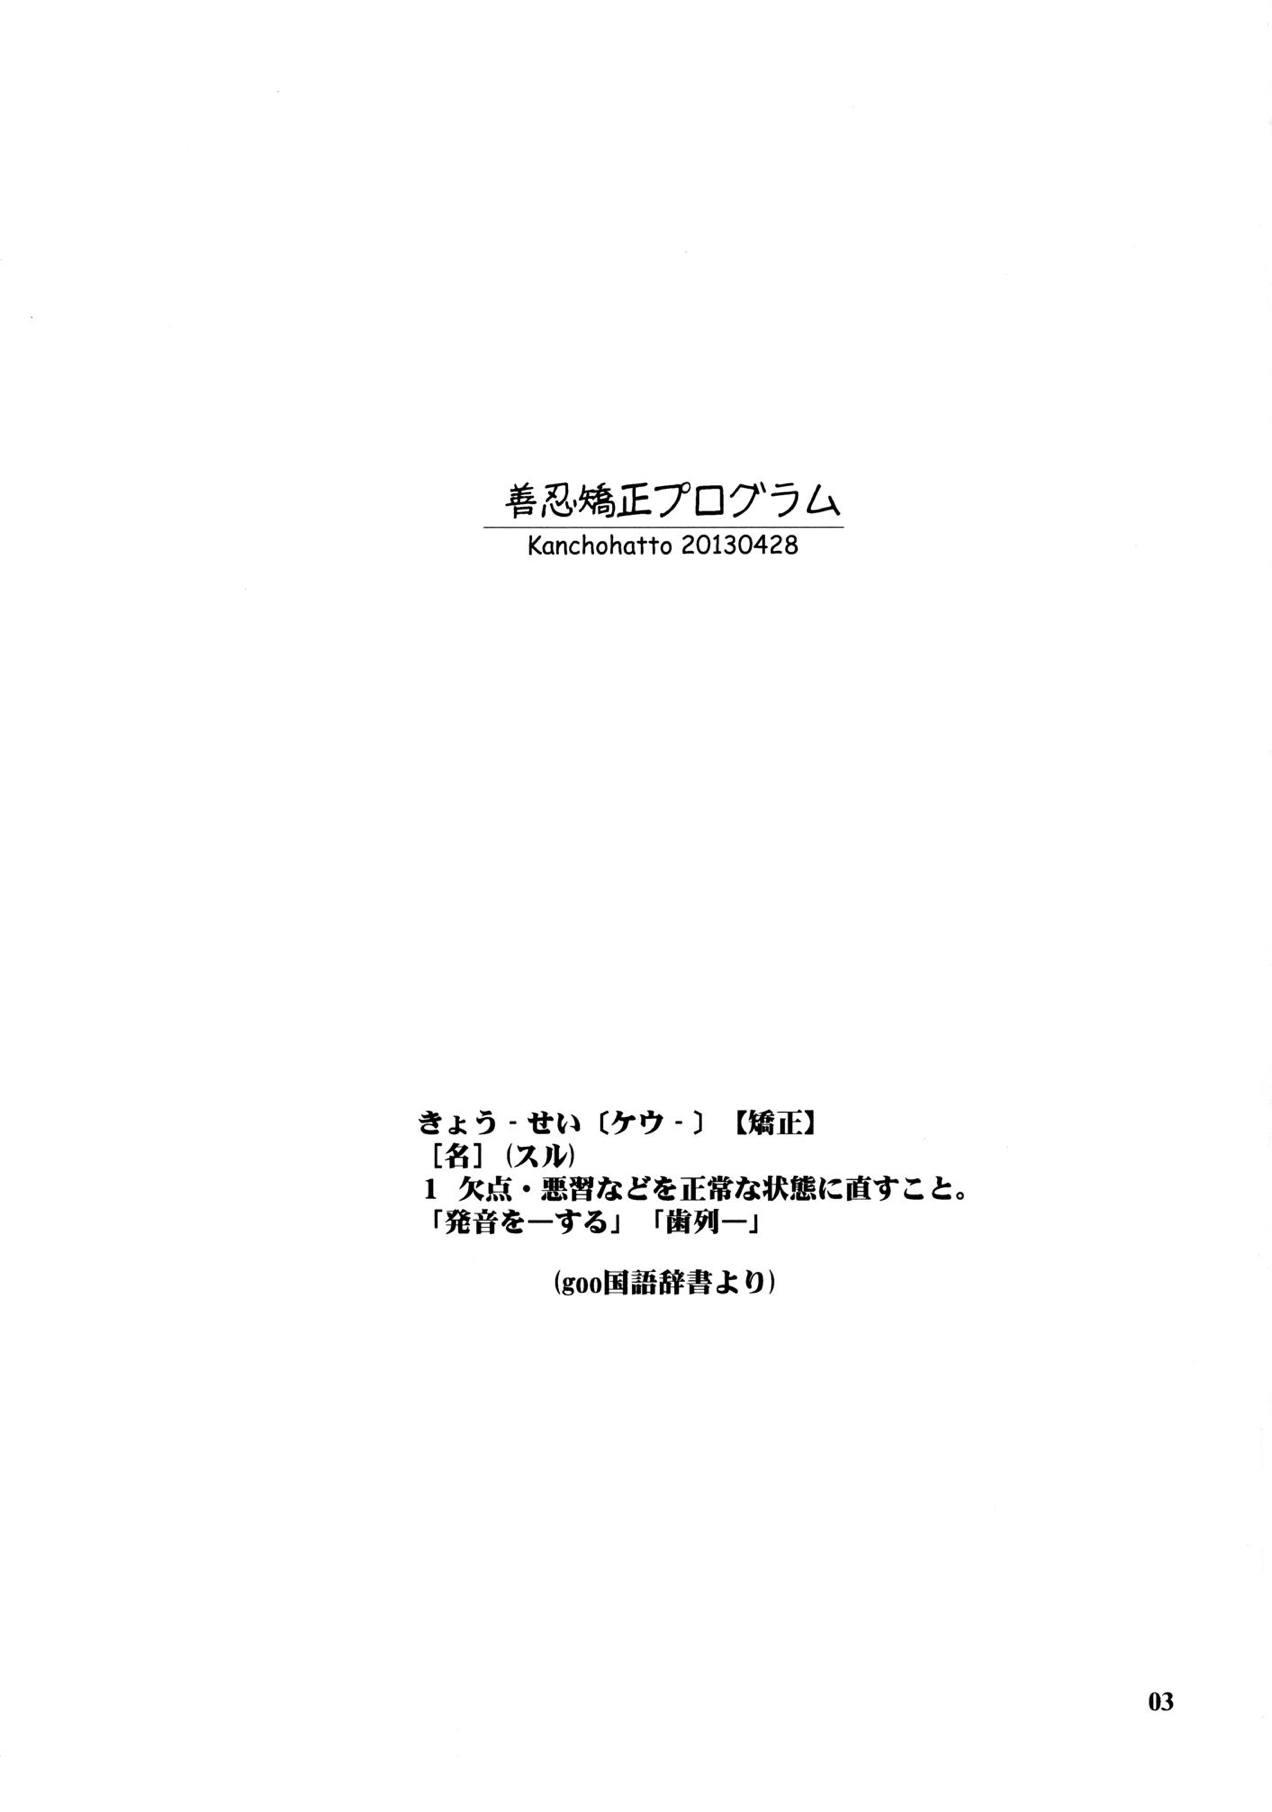 Les Zennin Kyousei Program - Senran kagura Taboo - Page 2